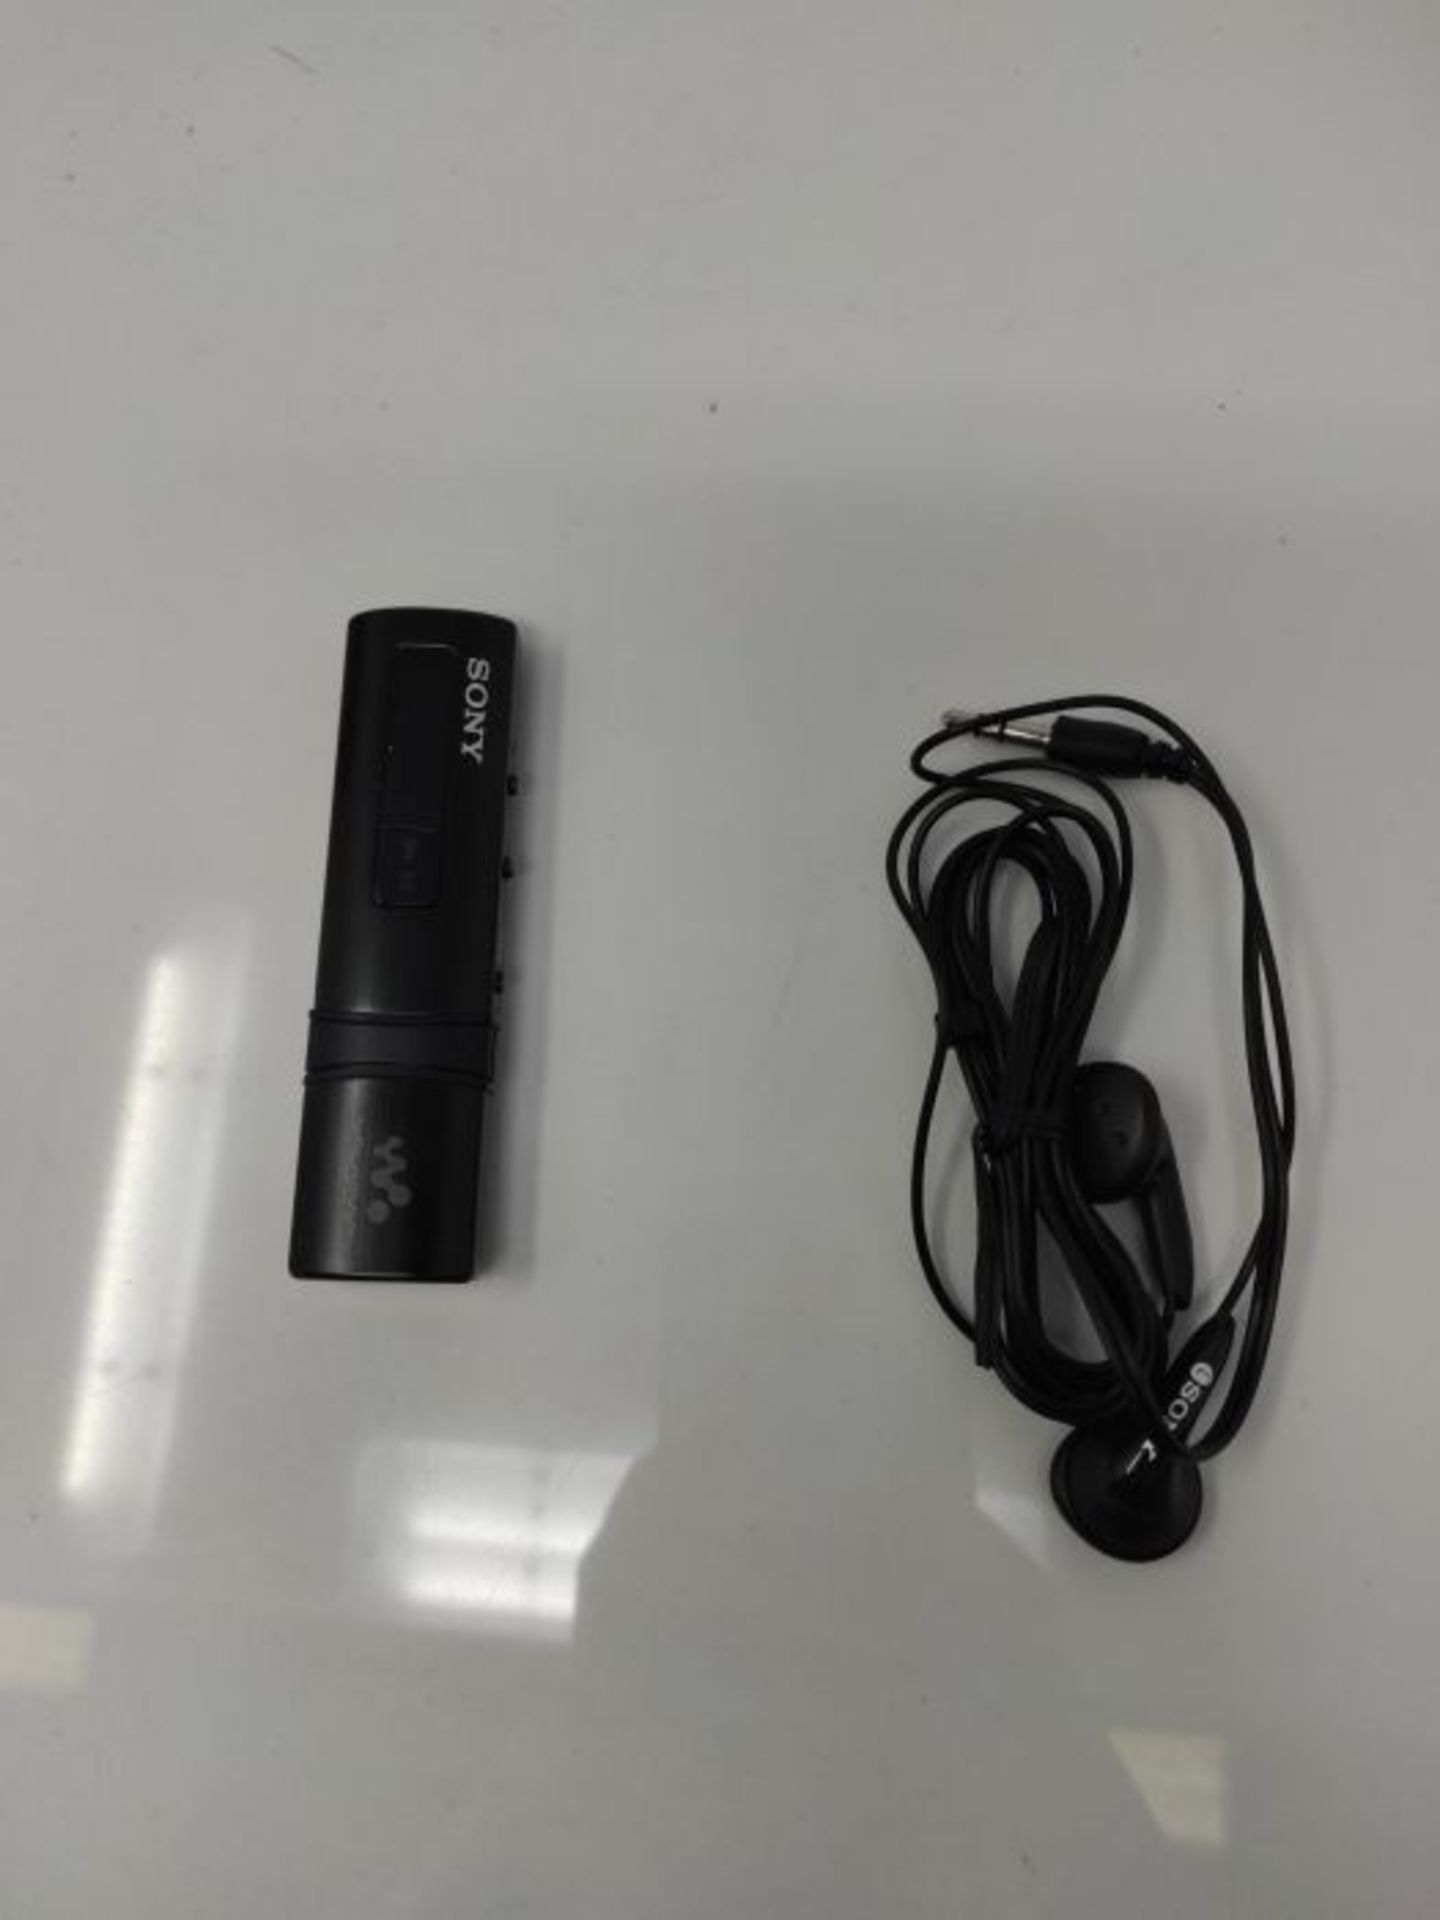 Sony NWZ-B183B Walkman (4GB Speicher, USB) schwarz - Image 2 of 2